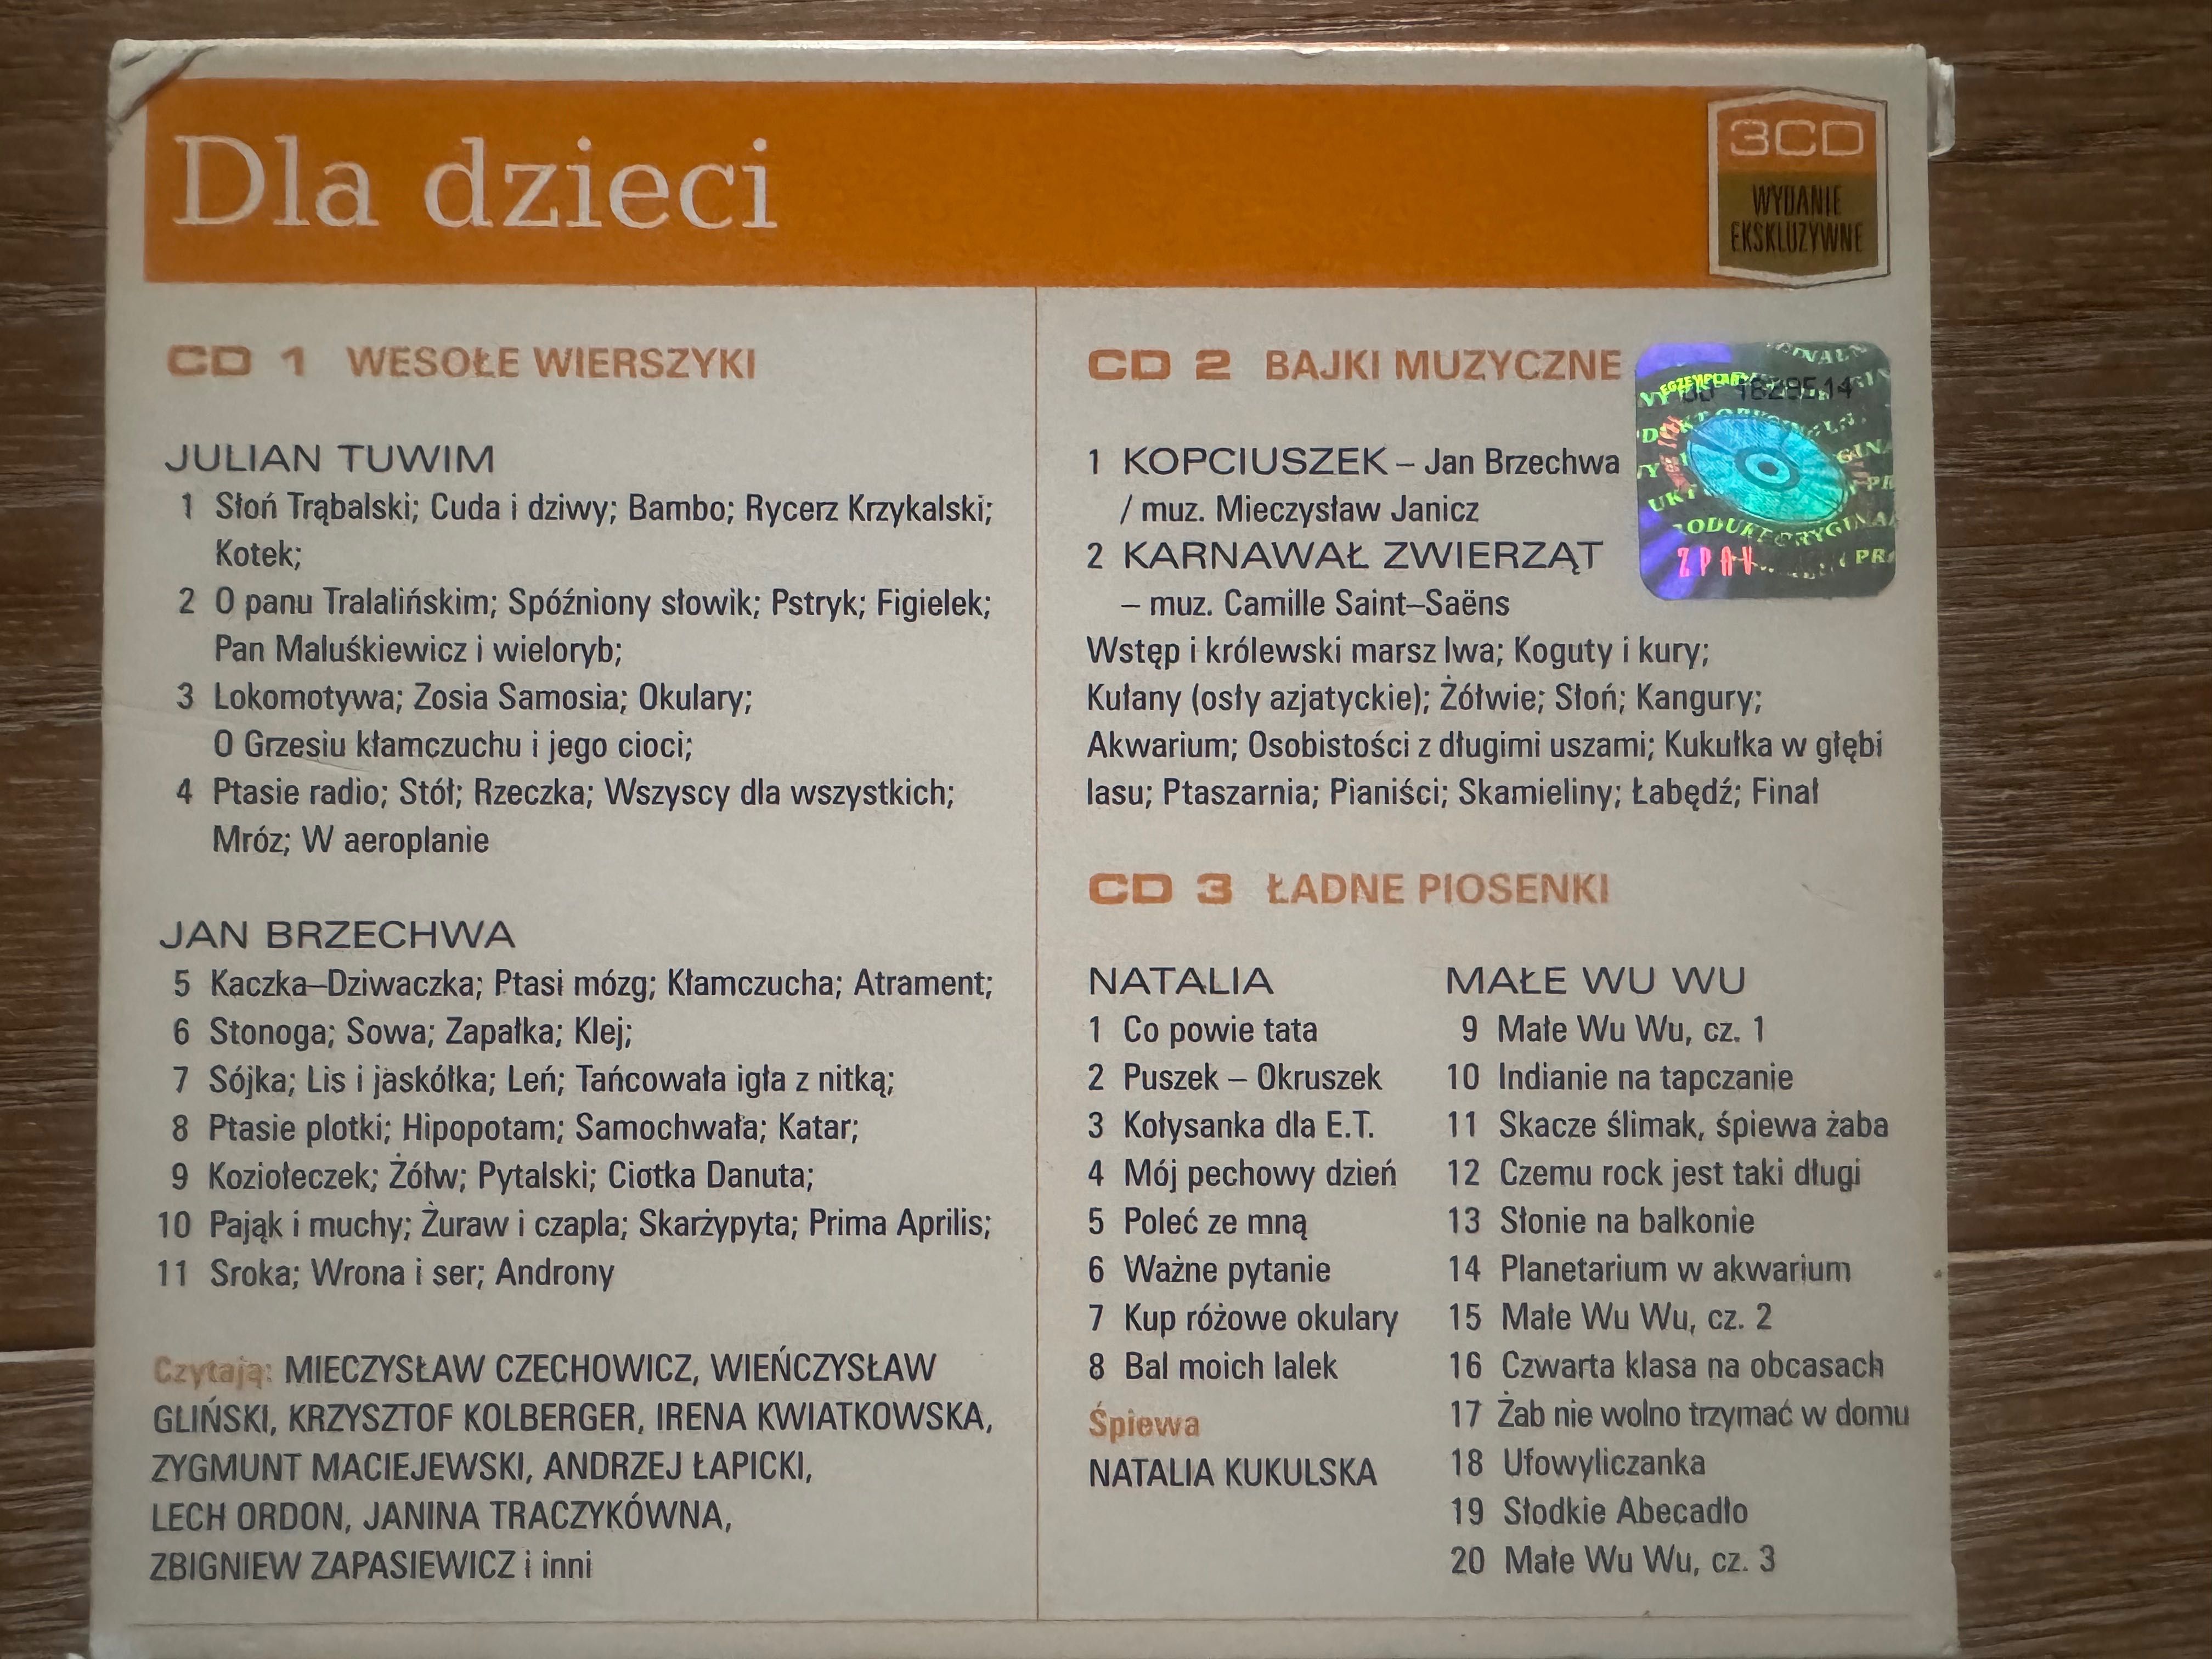 Dla Dzieci - zestaw 3 CD Wesołe wierszyki, Bajki muz. i Ładne piosenki